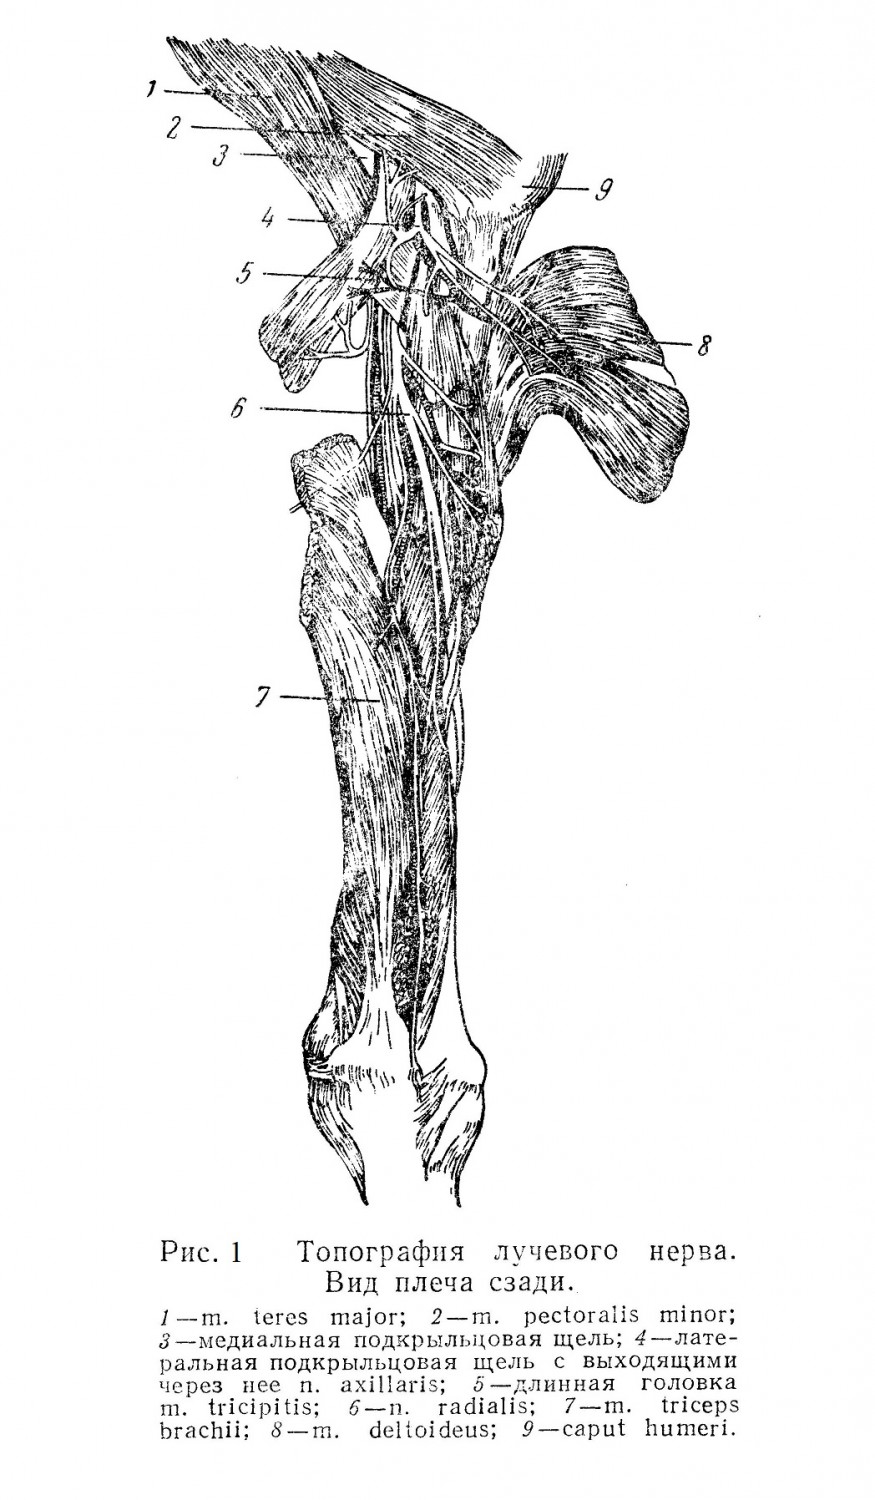 Обнажение лучевого нерва (n. radialis)